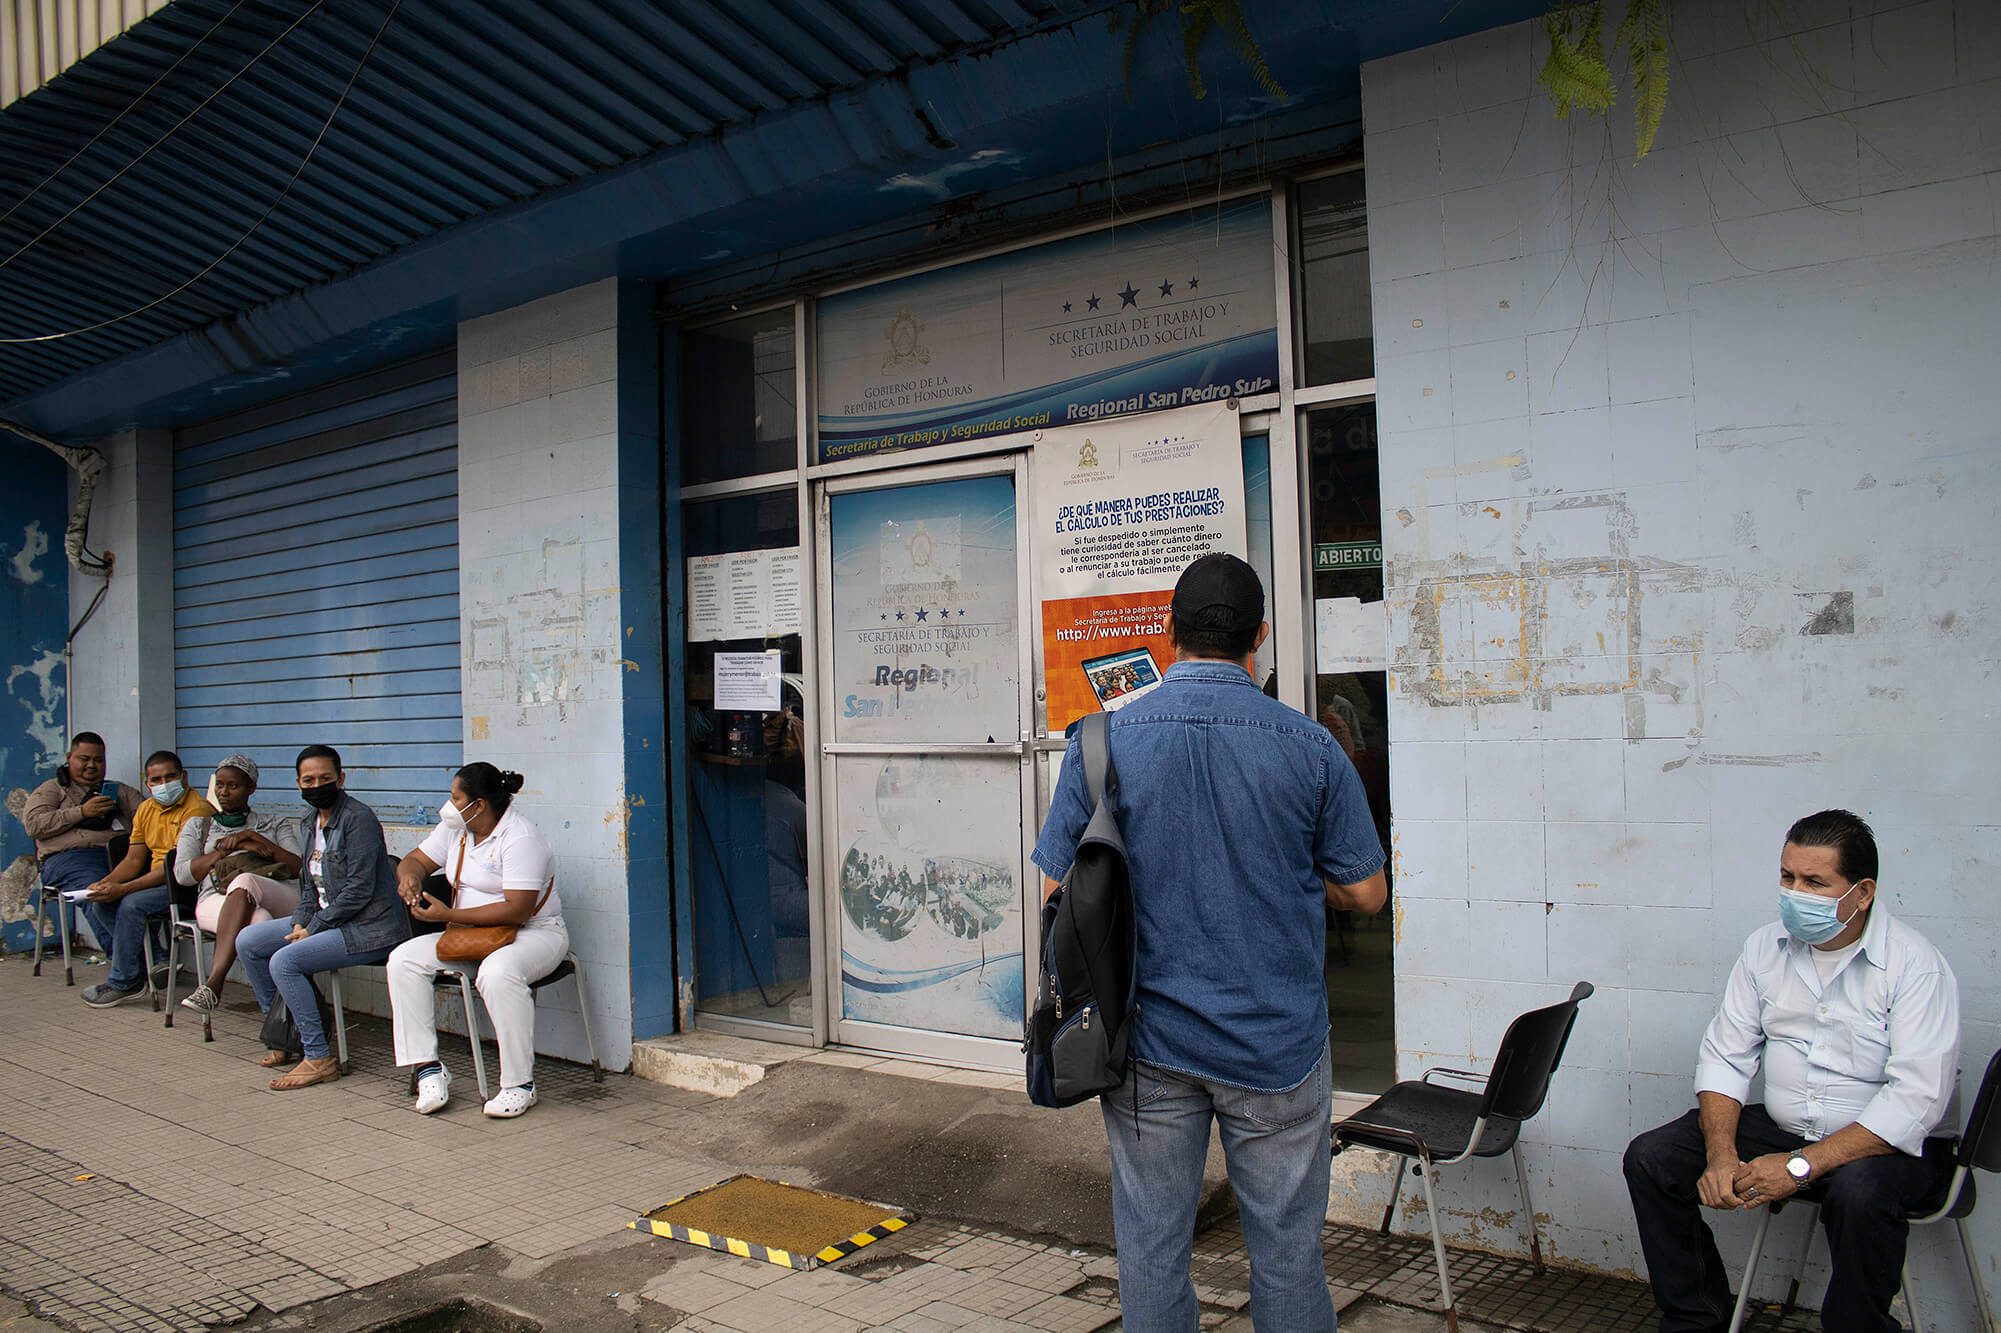 explotación laboral en honduras 2022 Un grupo de personas esperan en las afueras de las instalaciones del Ministerio del Trabajo, San Pedro Sula 2022